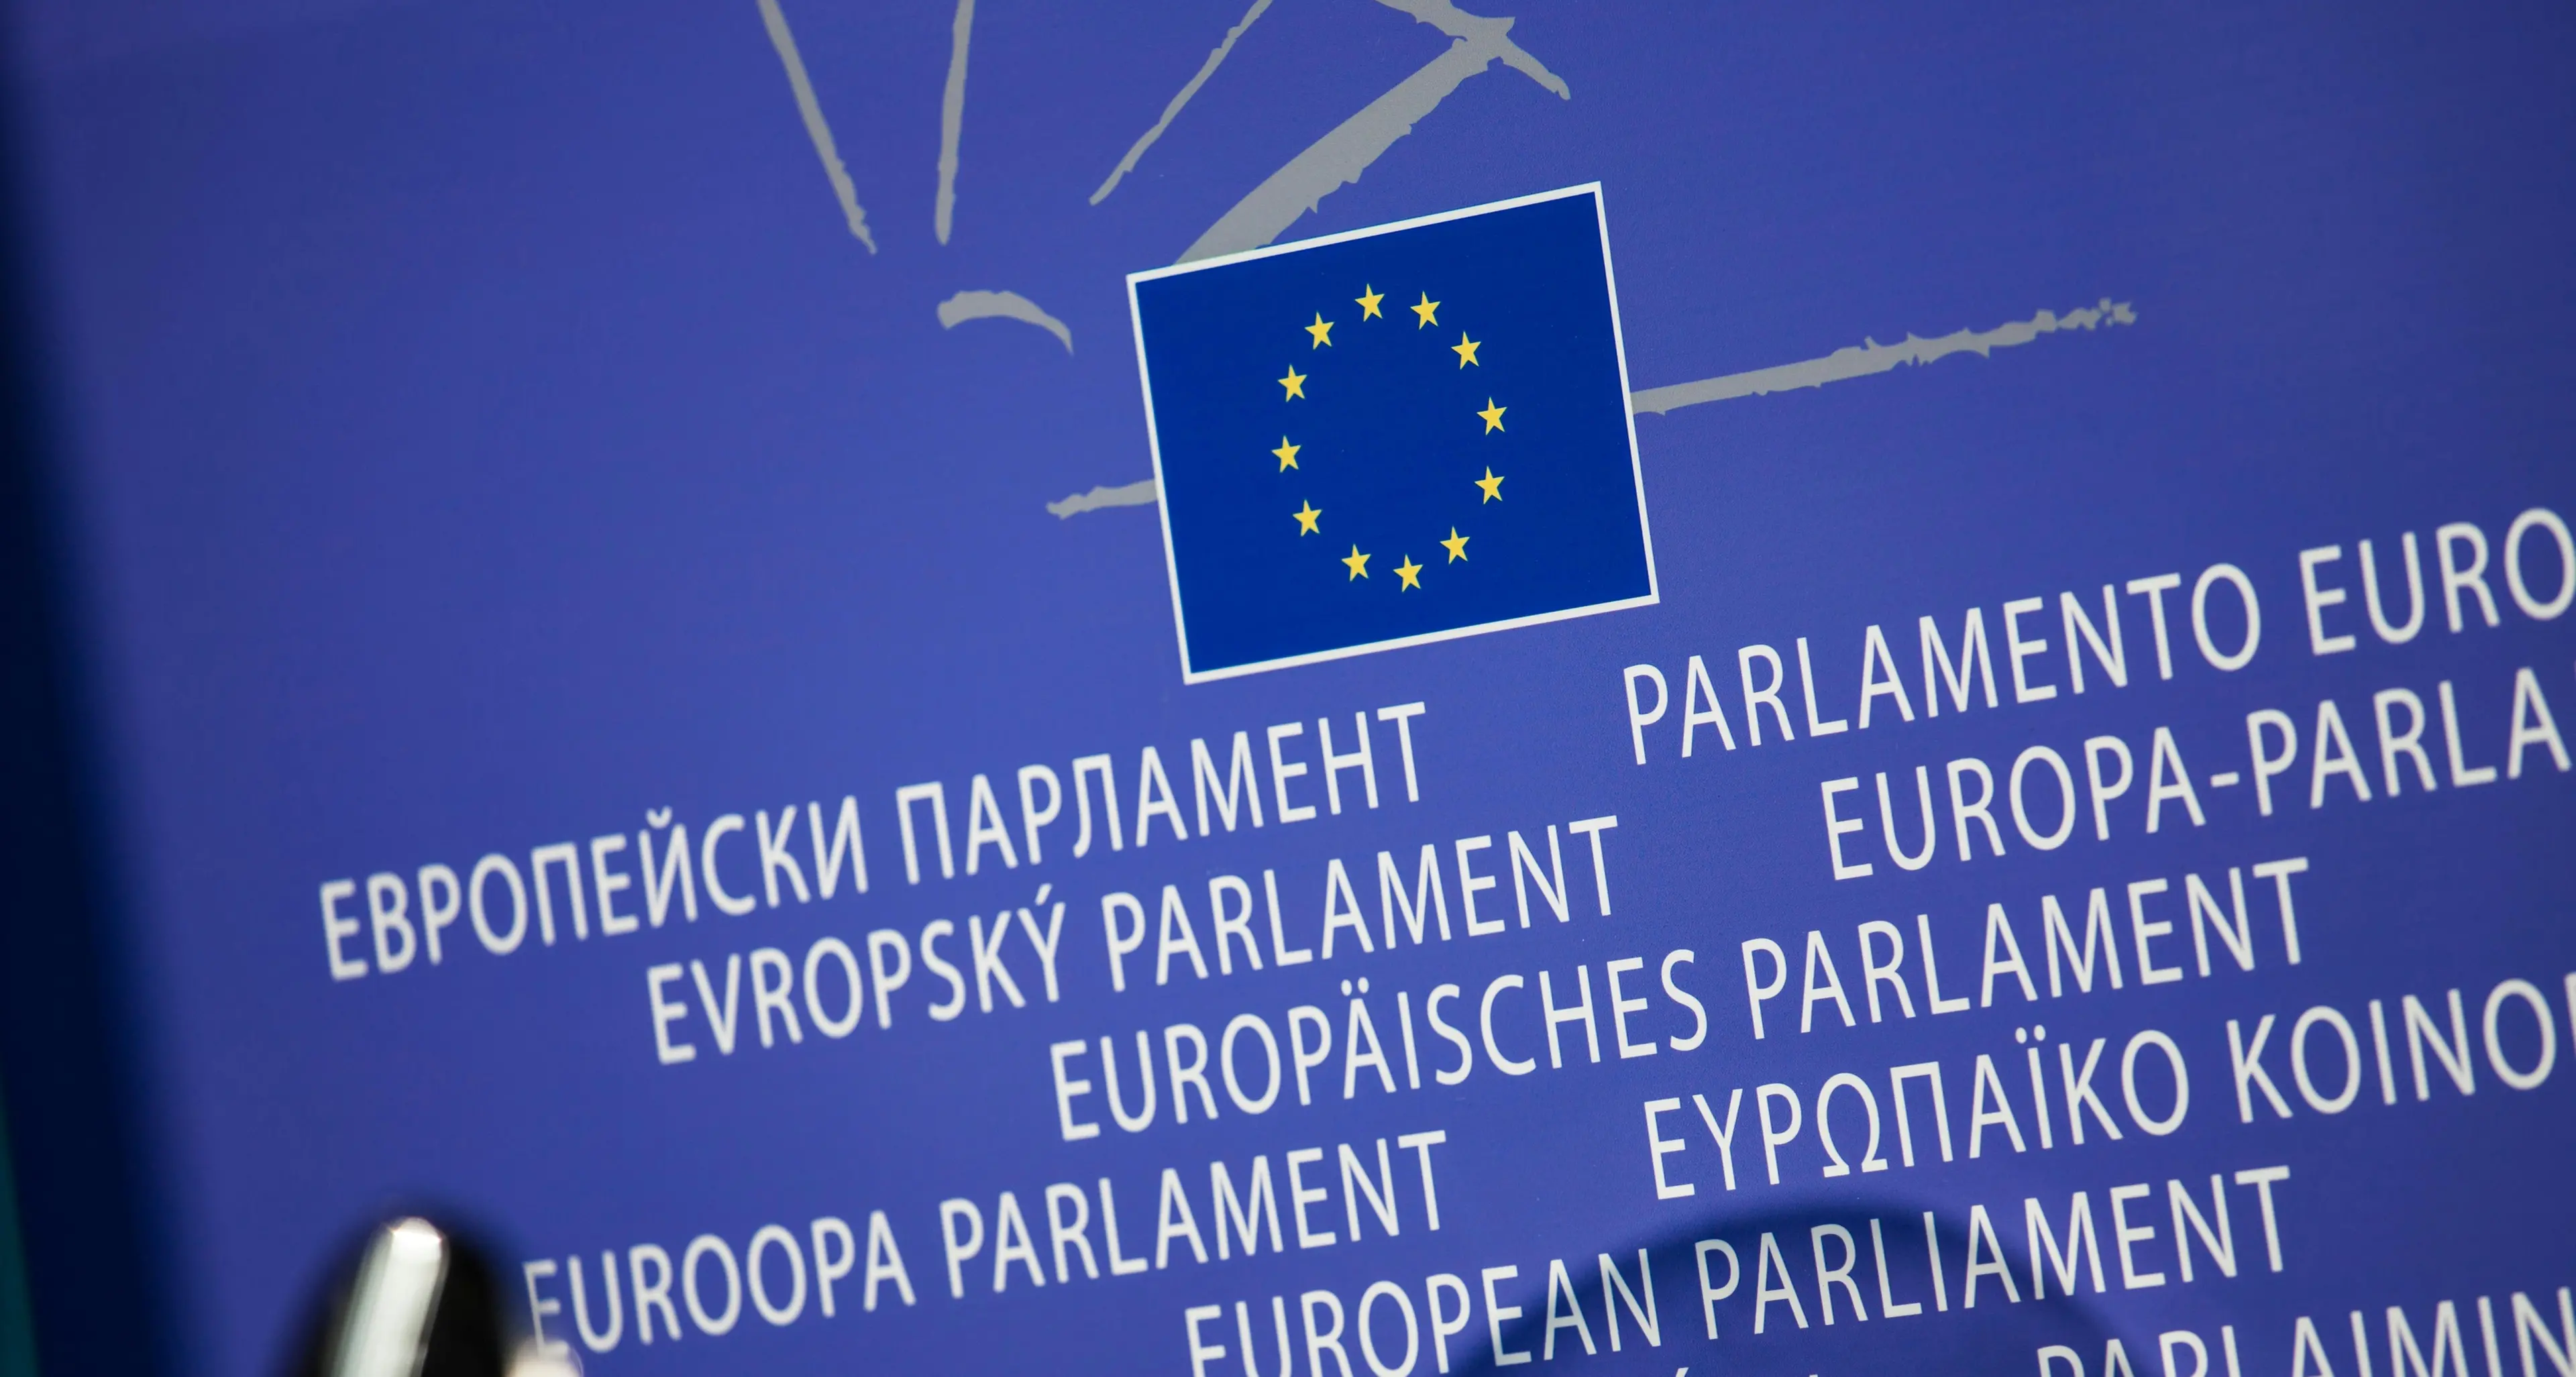 PNRR: le ulteriori modifiche approvate dall’Unione Europea – Nota Cgil nazionale